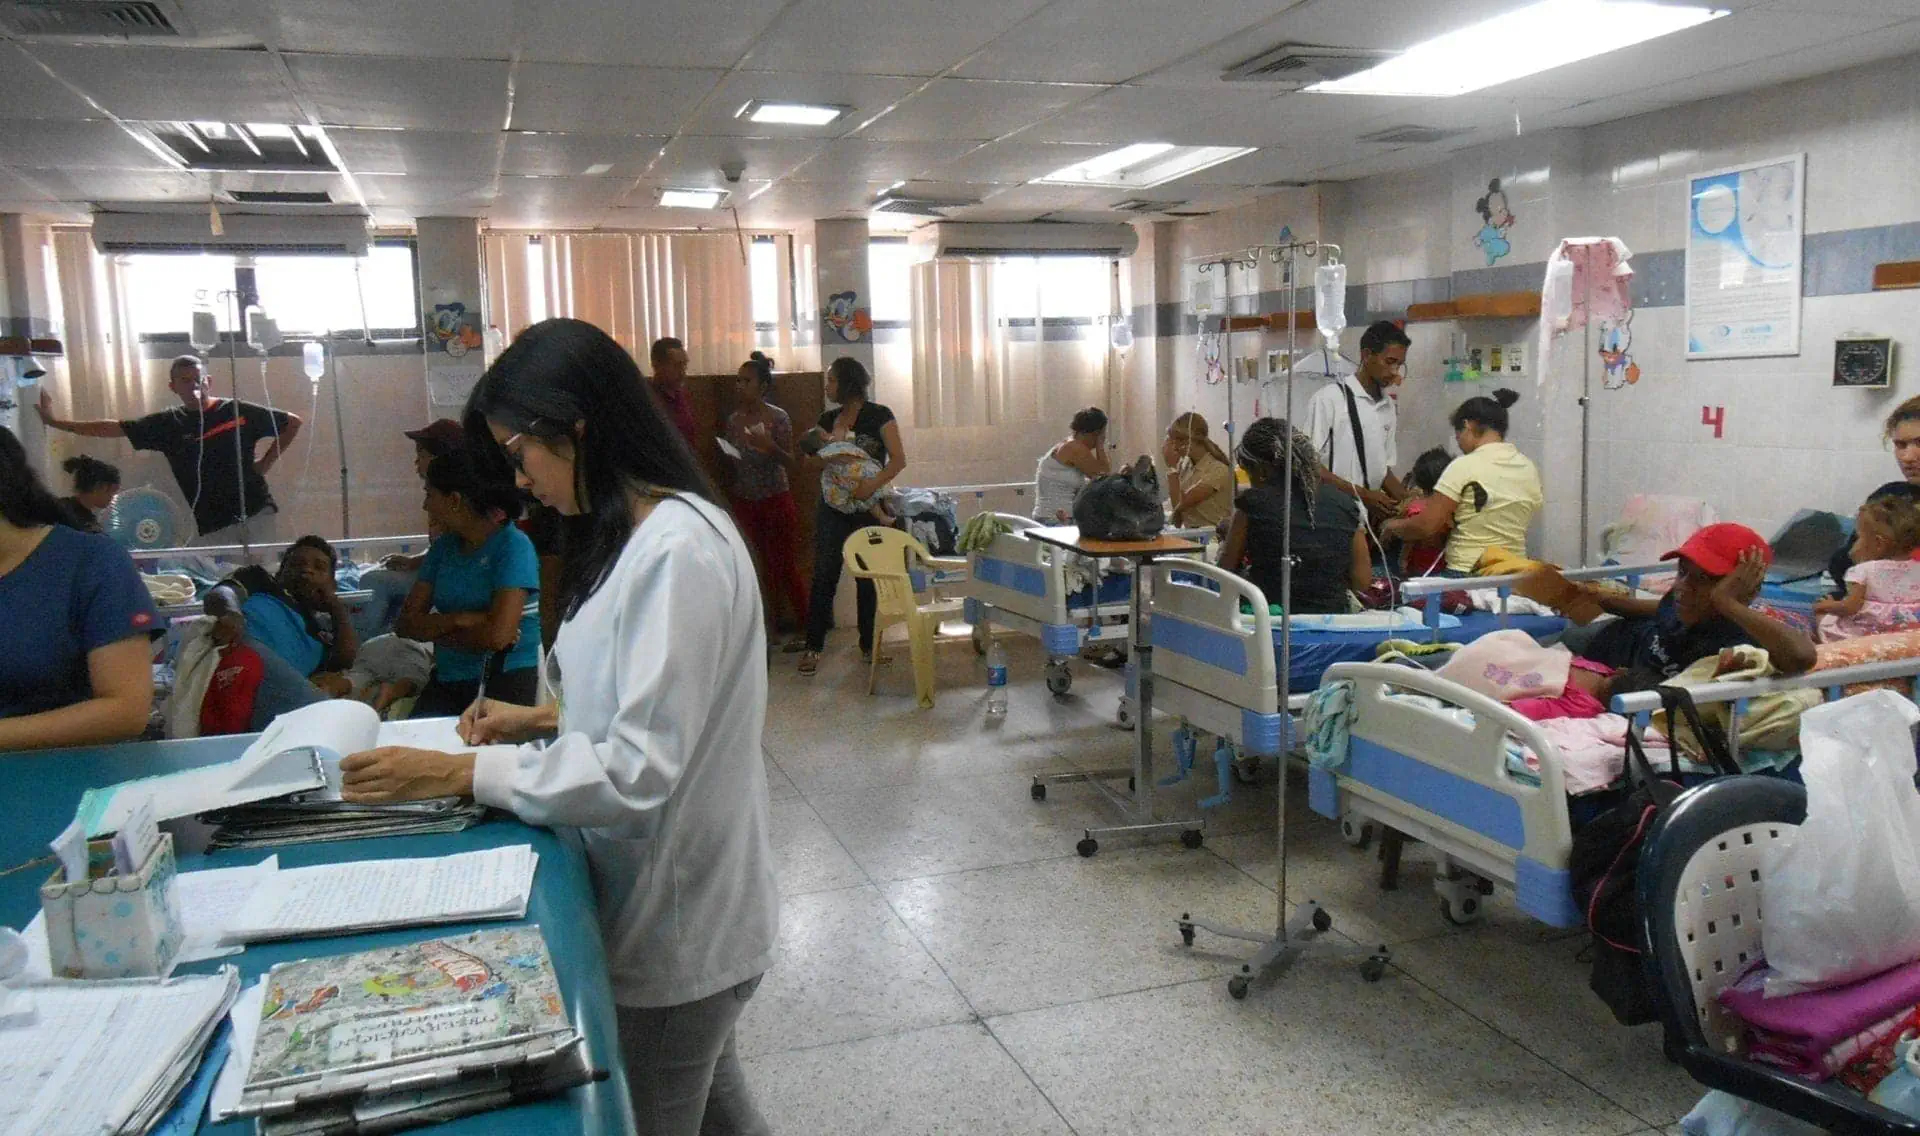 Очередь на операции в Венесуэле составляет от 5000 до 8000 пациентов, говорит Хулио Кастро